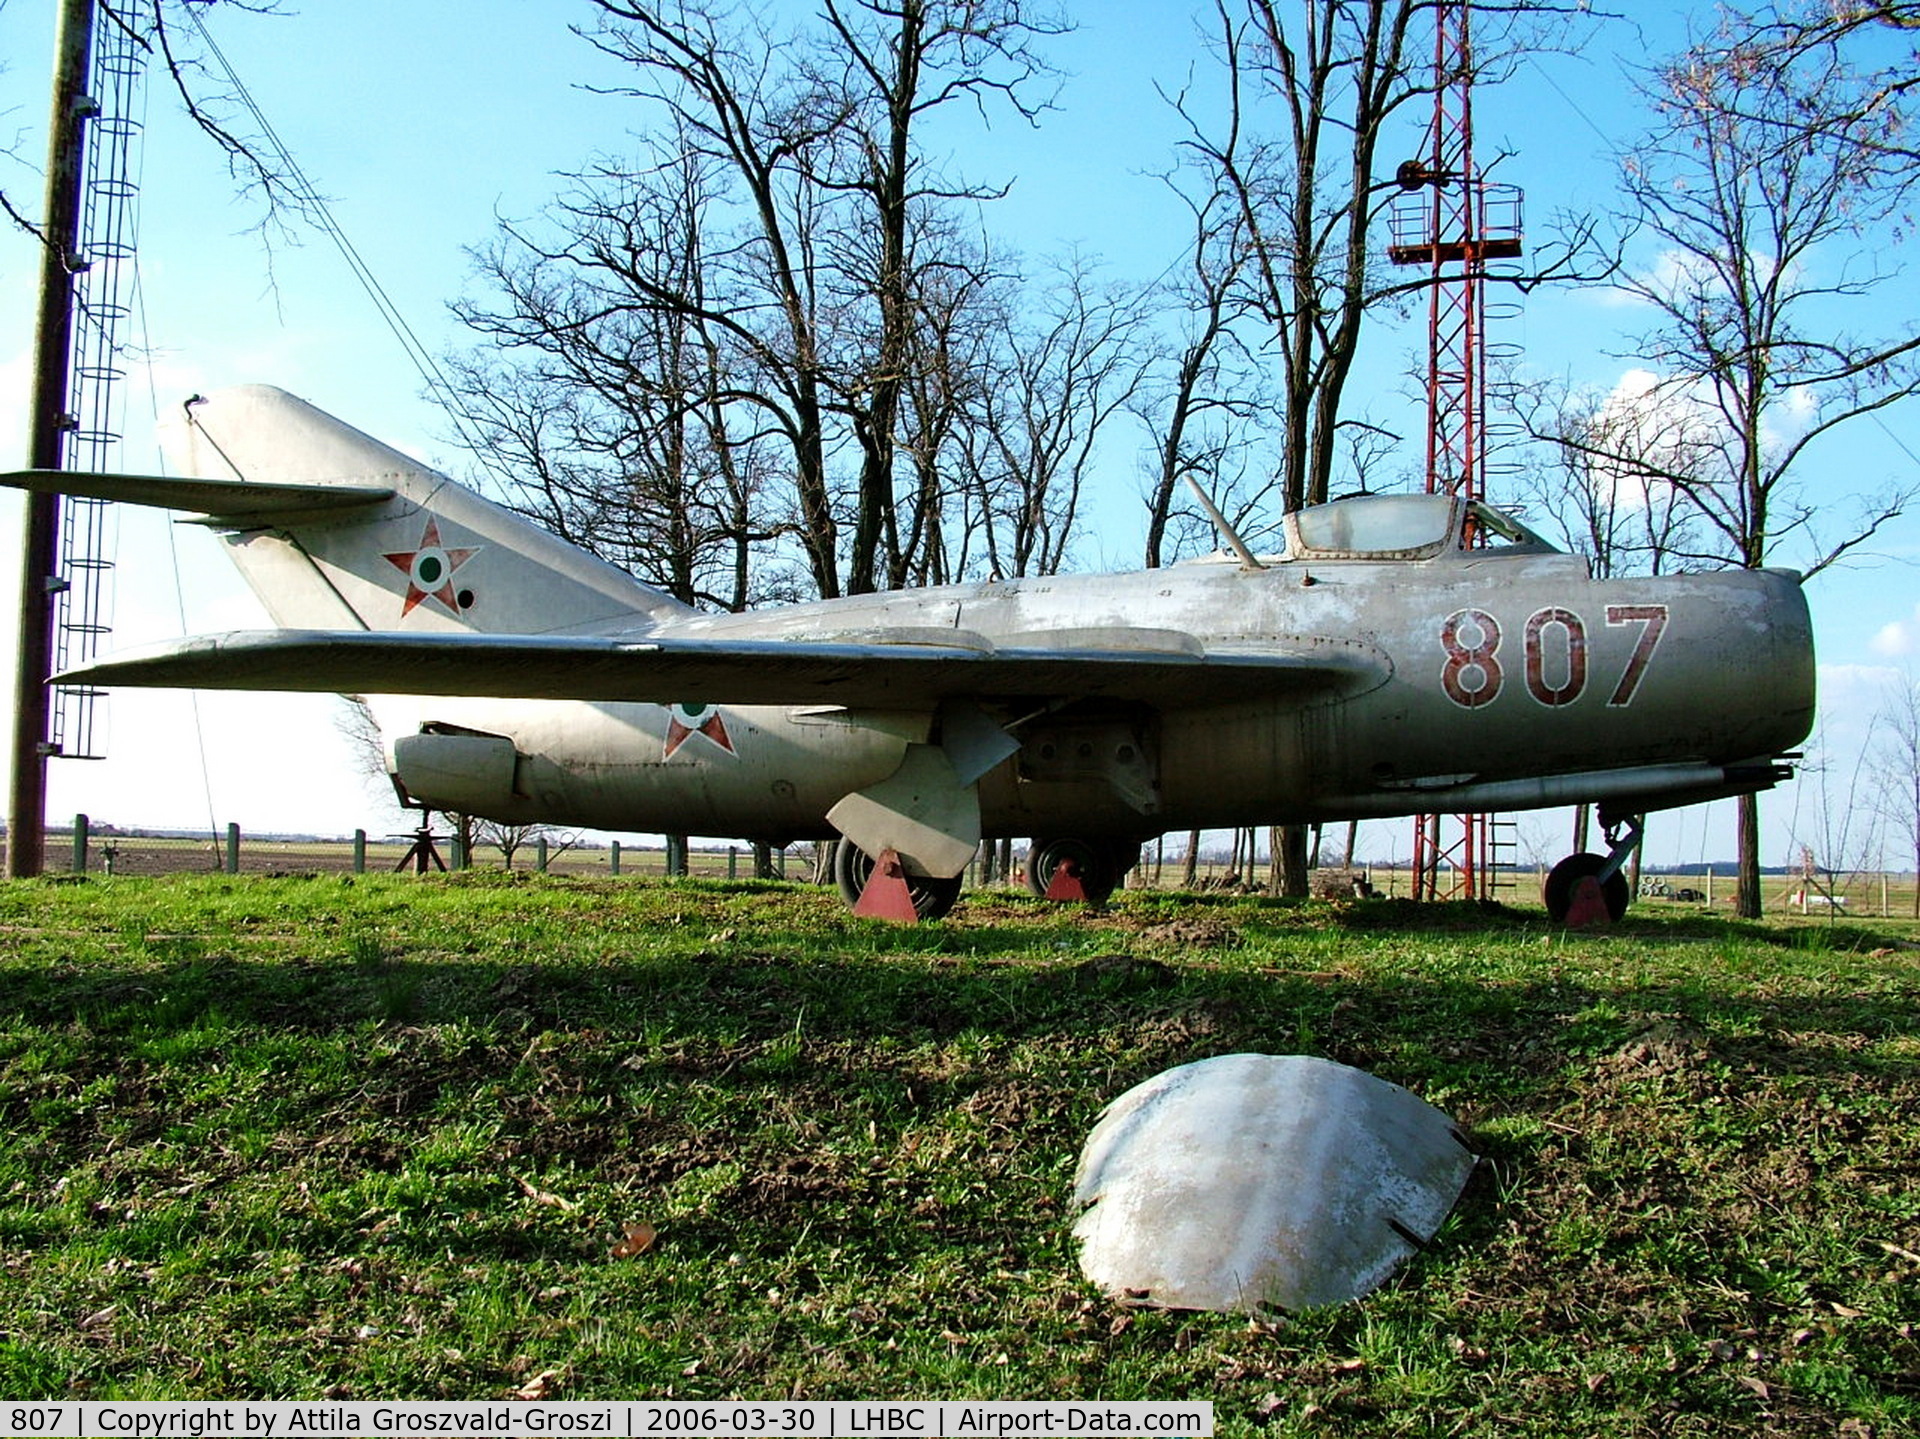 807, 1951 Mikoyan-Gurevich MiG-15 C/N 0807, Békéscsaba Airport, Hungary